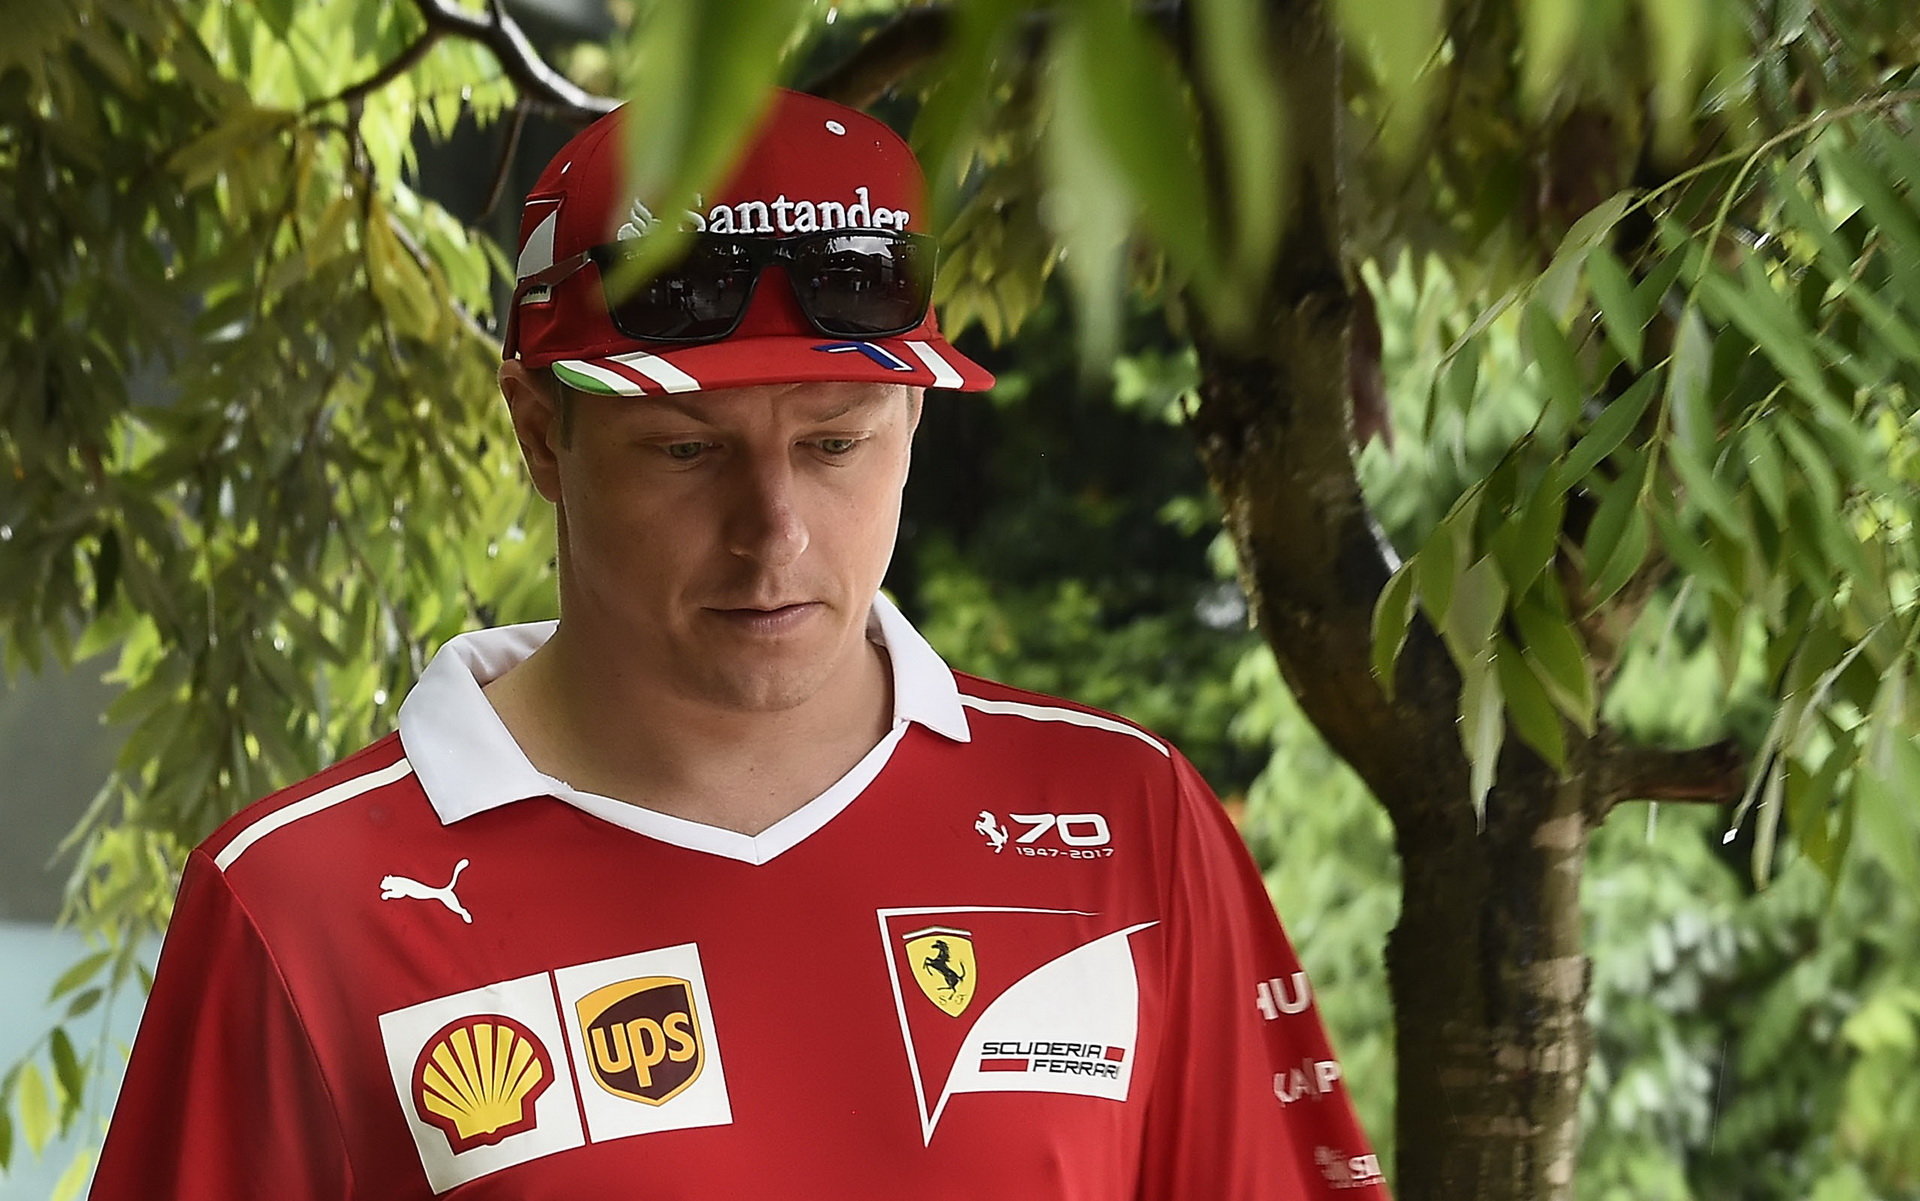 Kimi Räikkönen sice mluví optimisticky, ale pořád je cítit zklamání z Malajsie